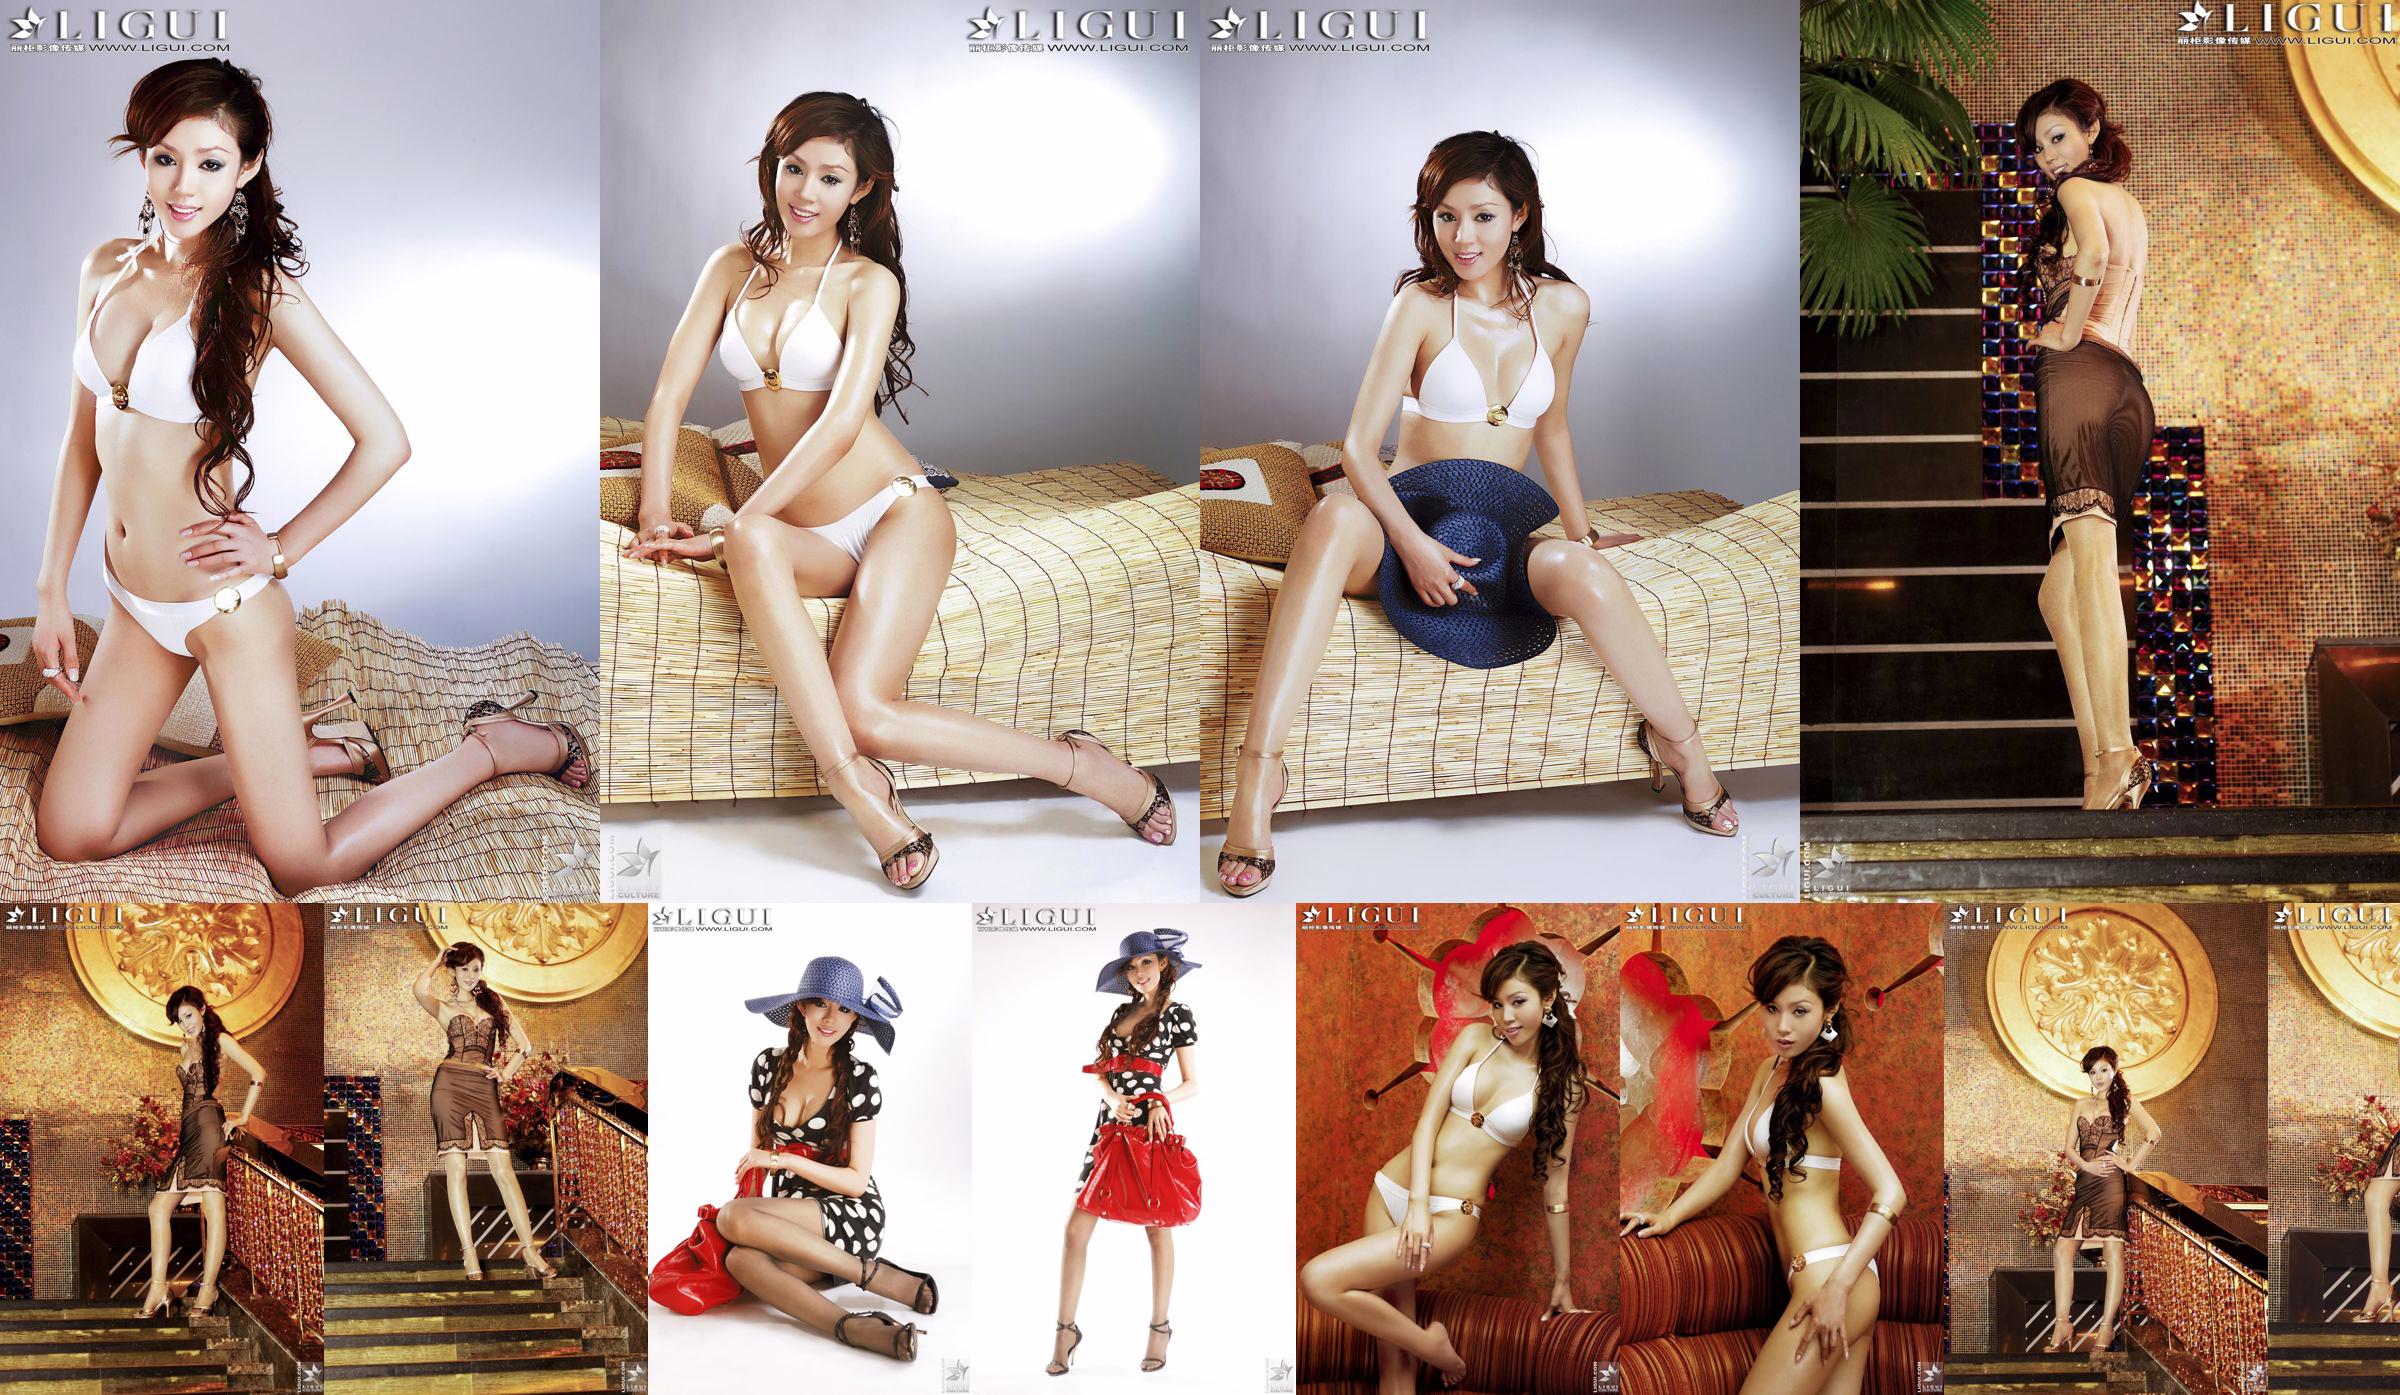 [丽 柜 LiGui] "Bikini + Robe" du modèle Yao Jinjin, belles jambes et pieds soyeux Photo Picture No.e1354a Page 25